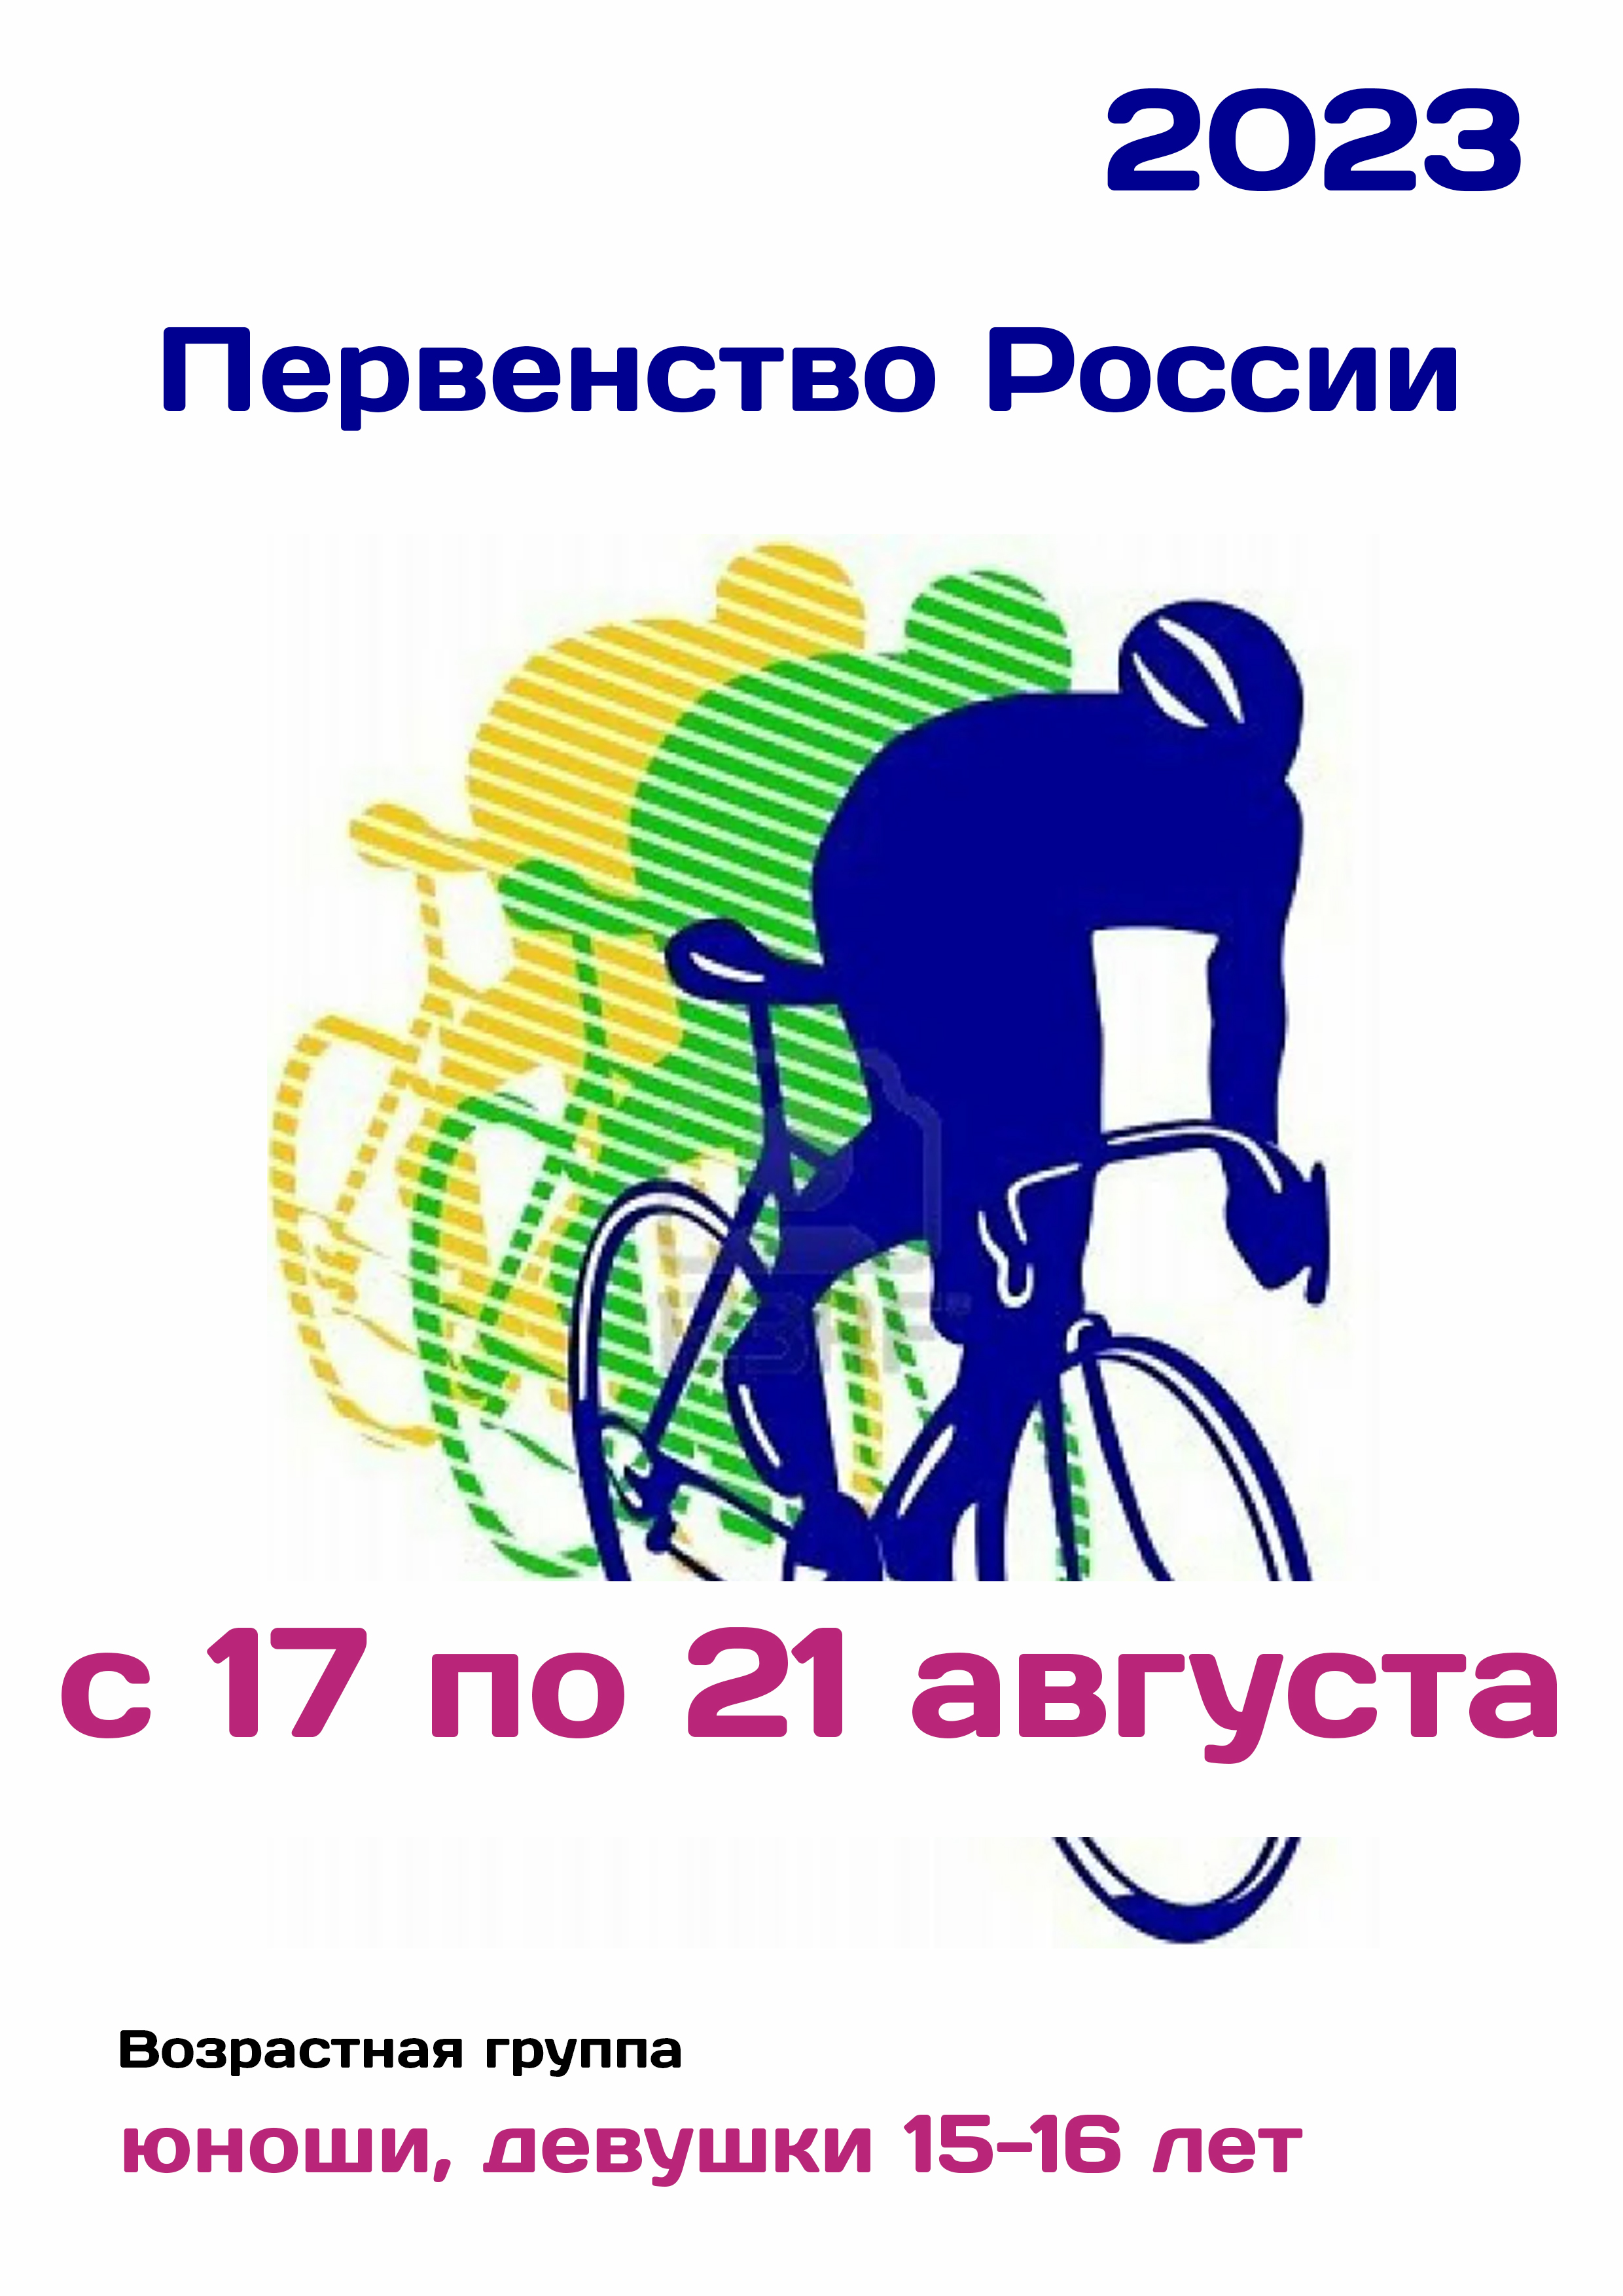 Первенство России по велоспорту 17  серпня
 2023  рік
 